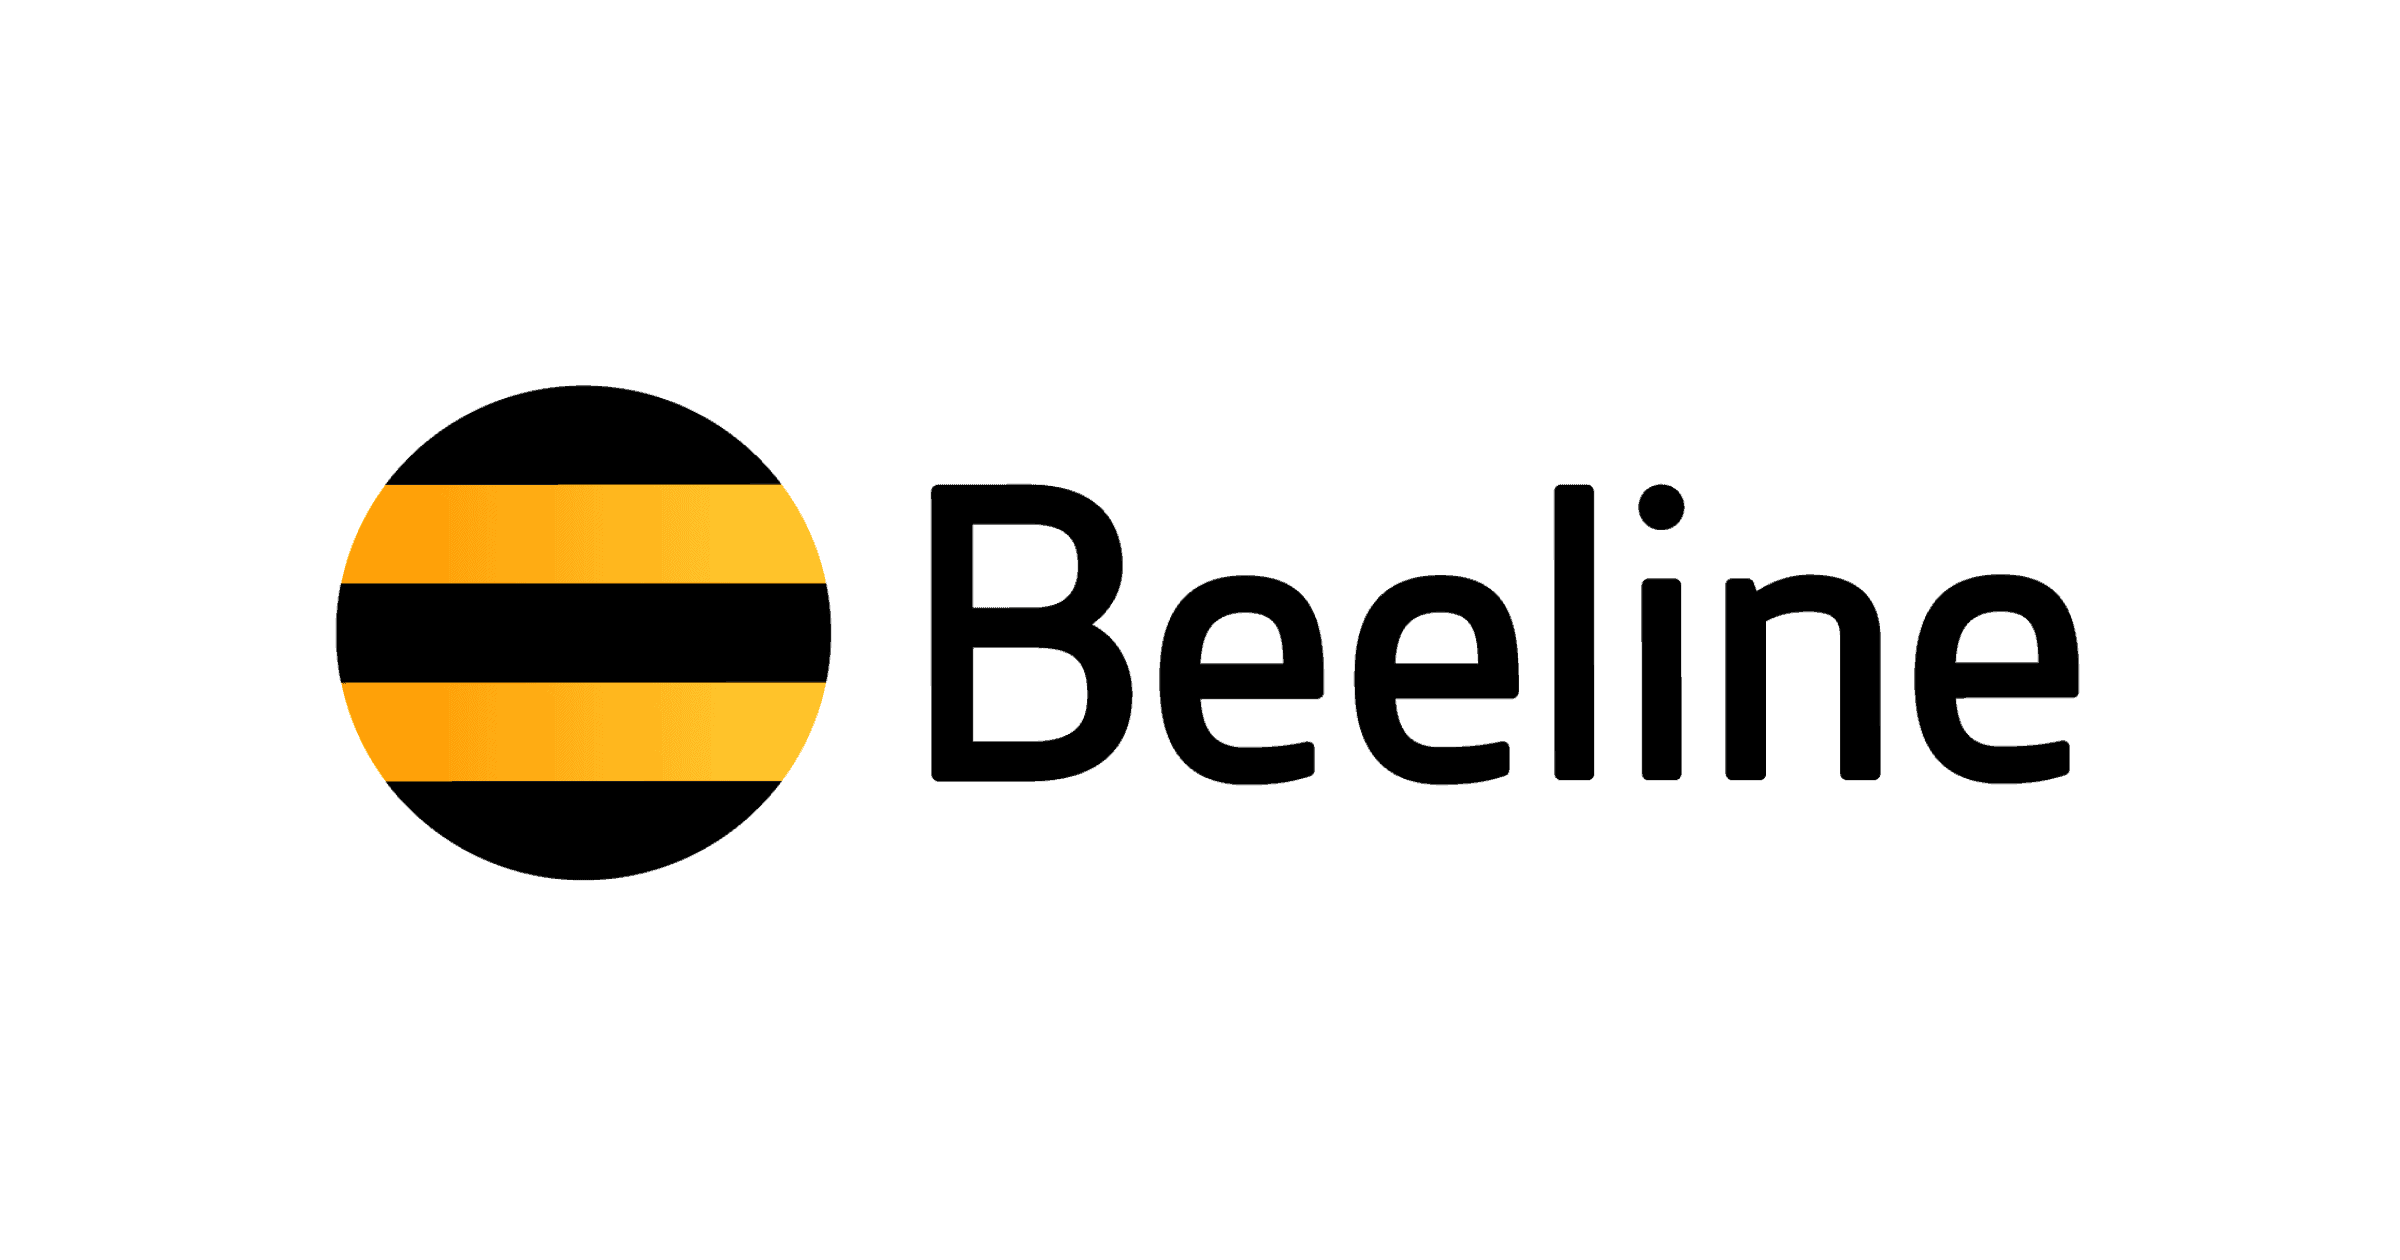 Beeline сообщил о стабильной работе интернета и сотовой связи изображение публикации